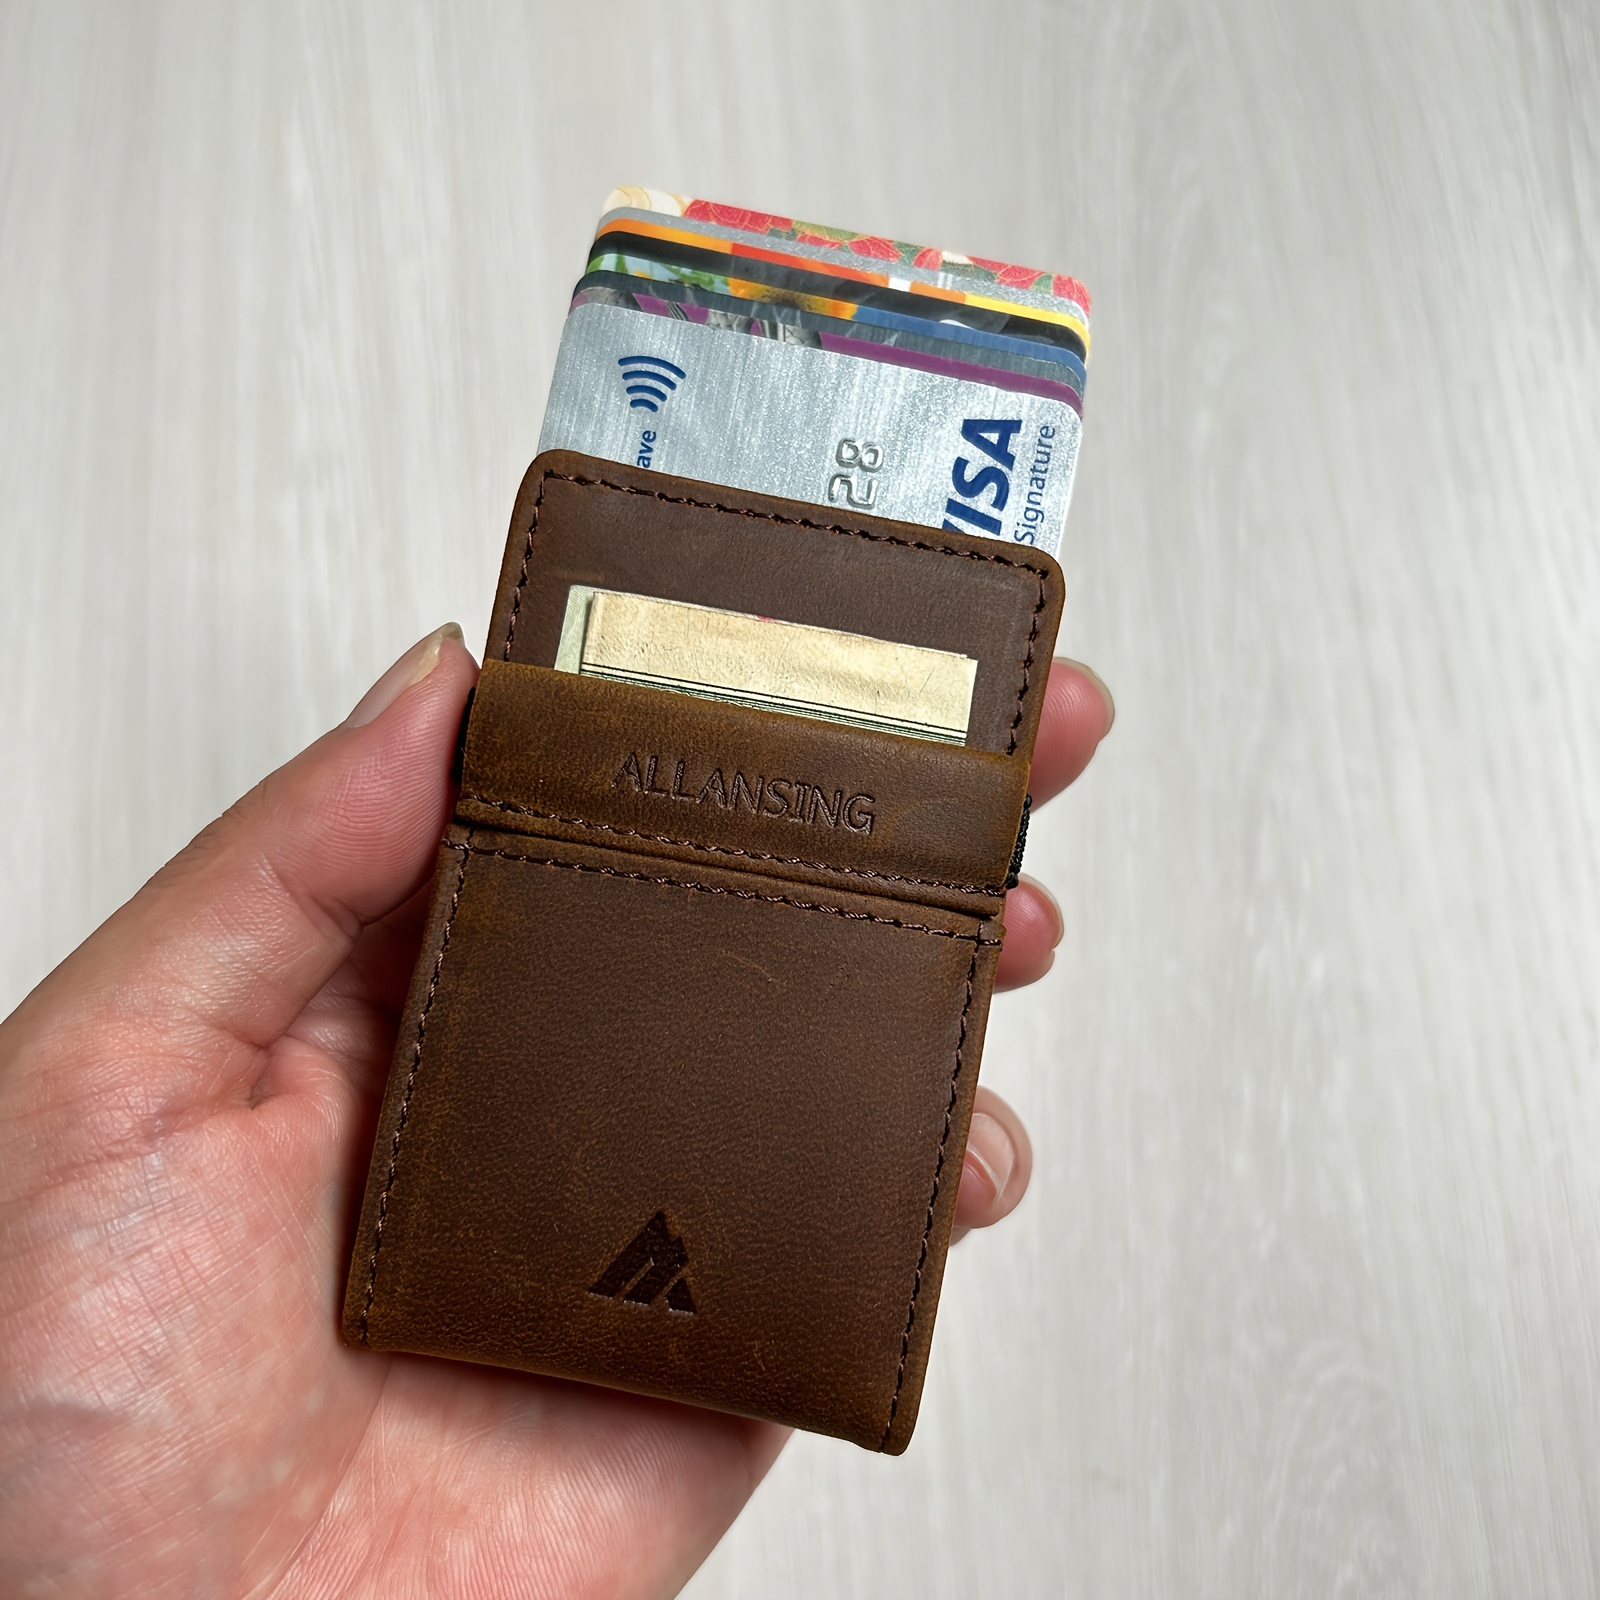 Slim Minimalist Leather Wallets